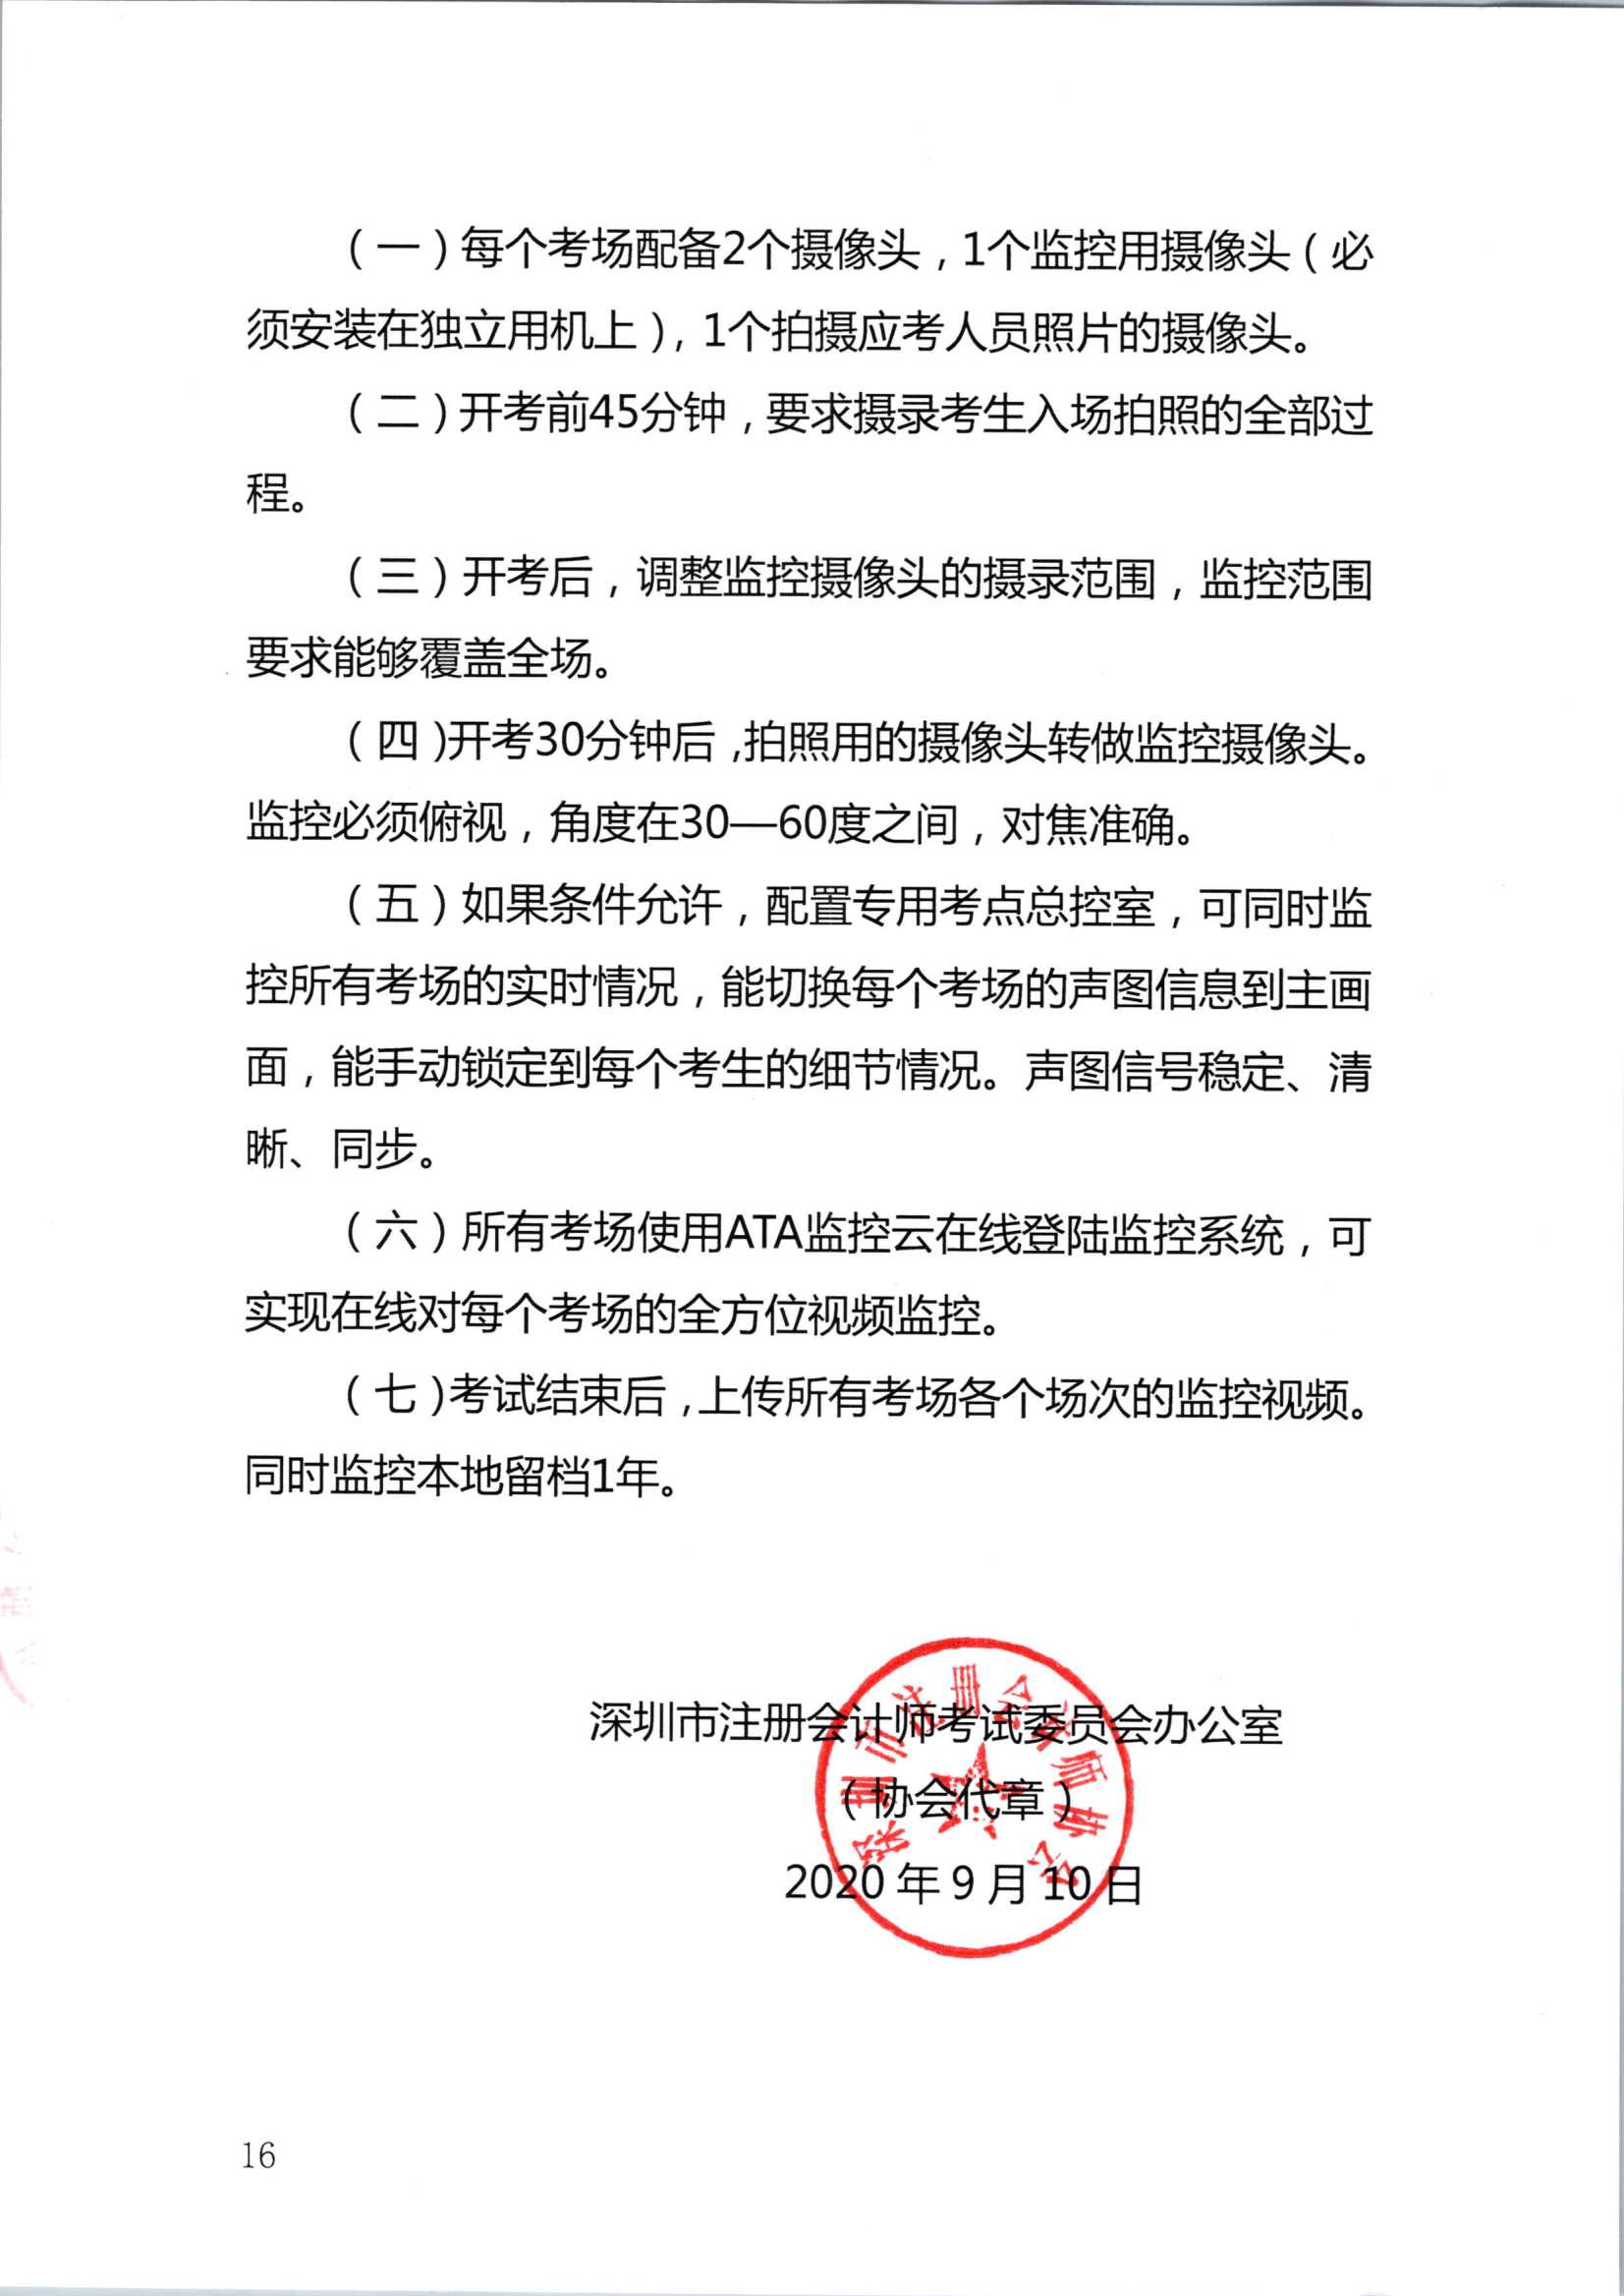 2020年注册会计师全国统一考试深圳考区工作方案_16.Png